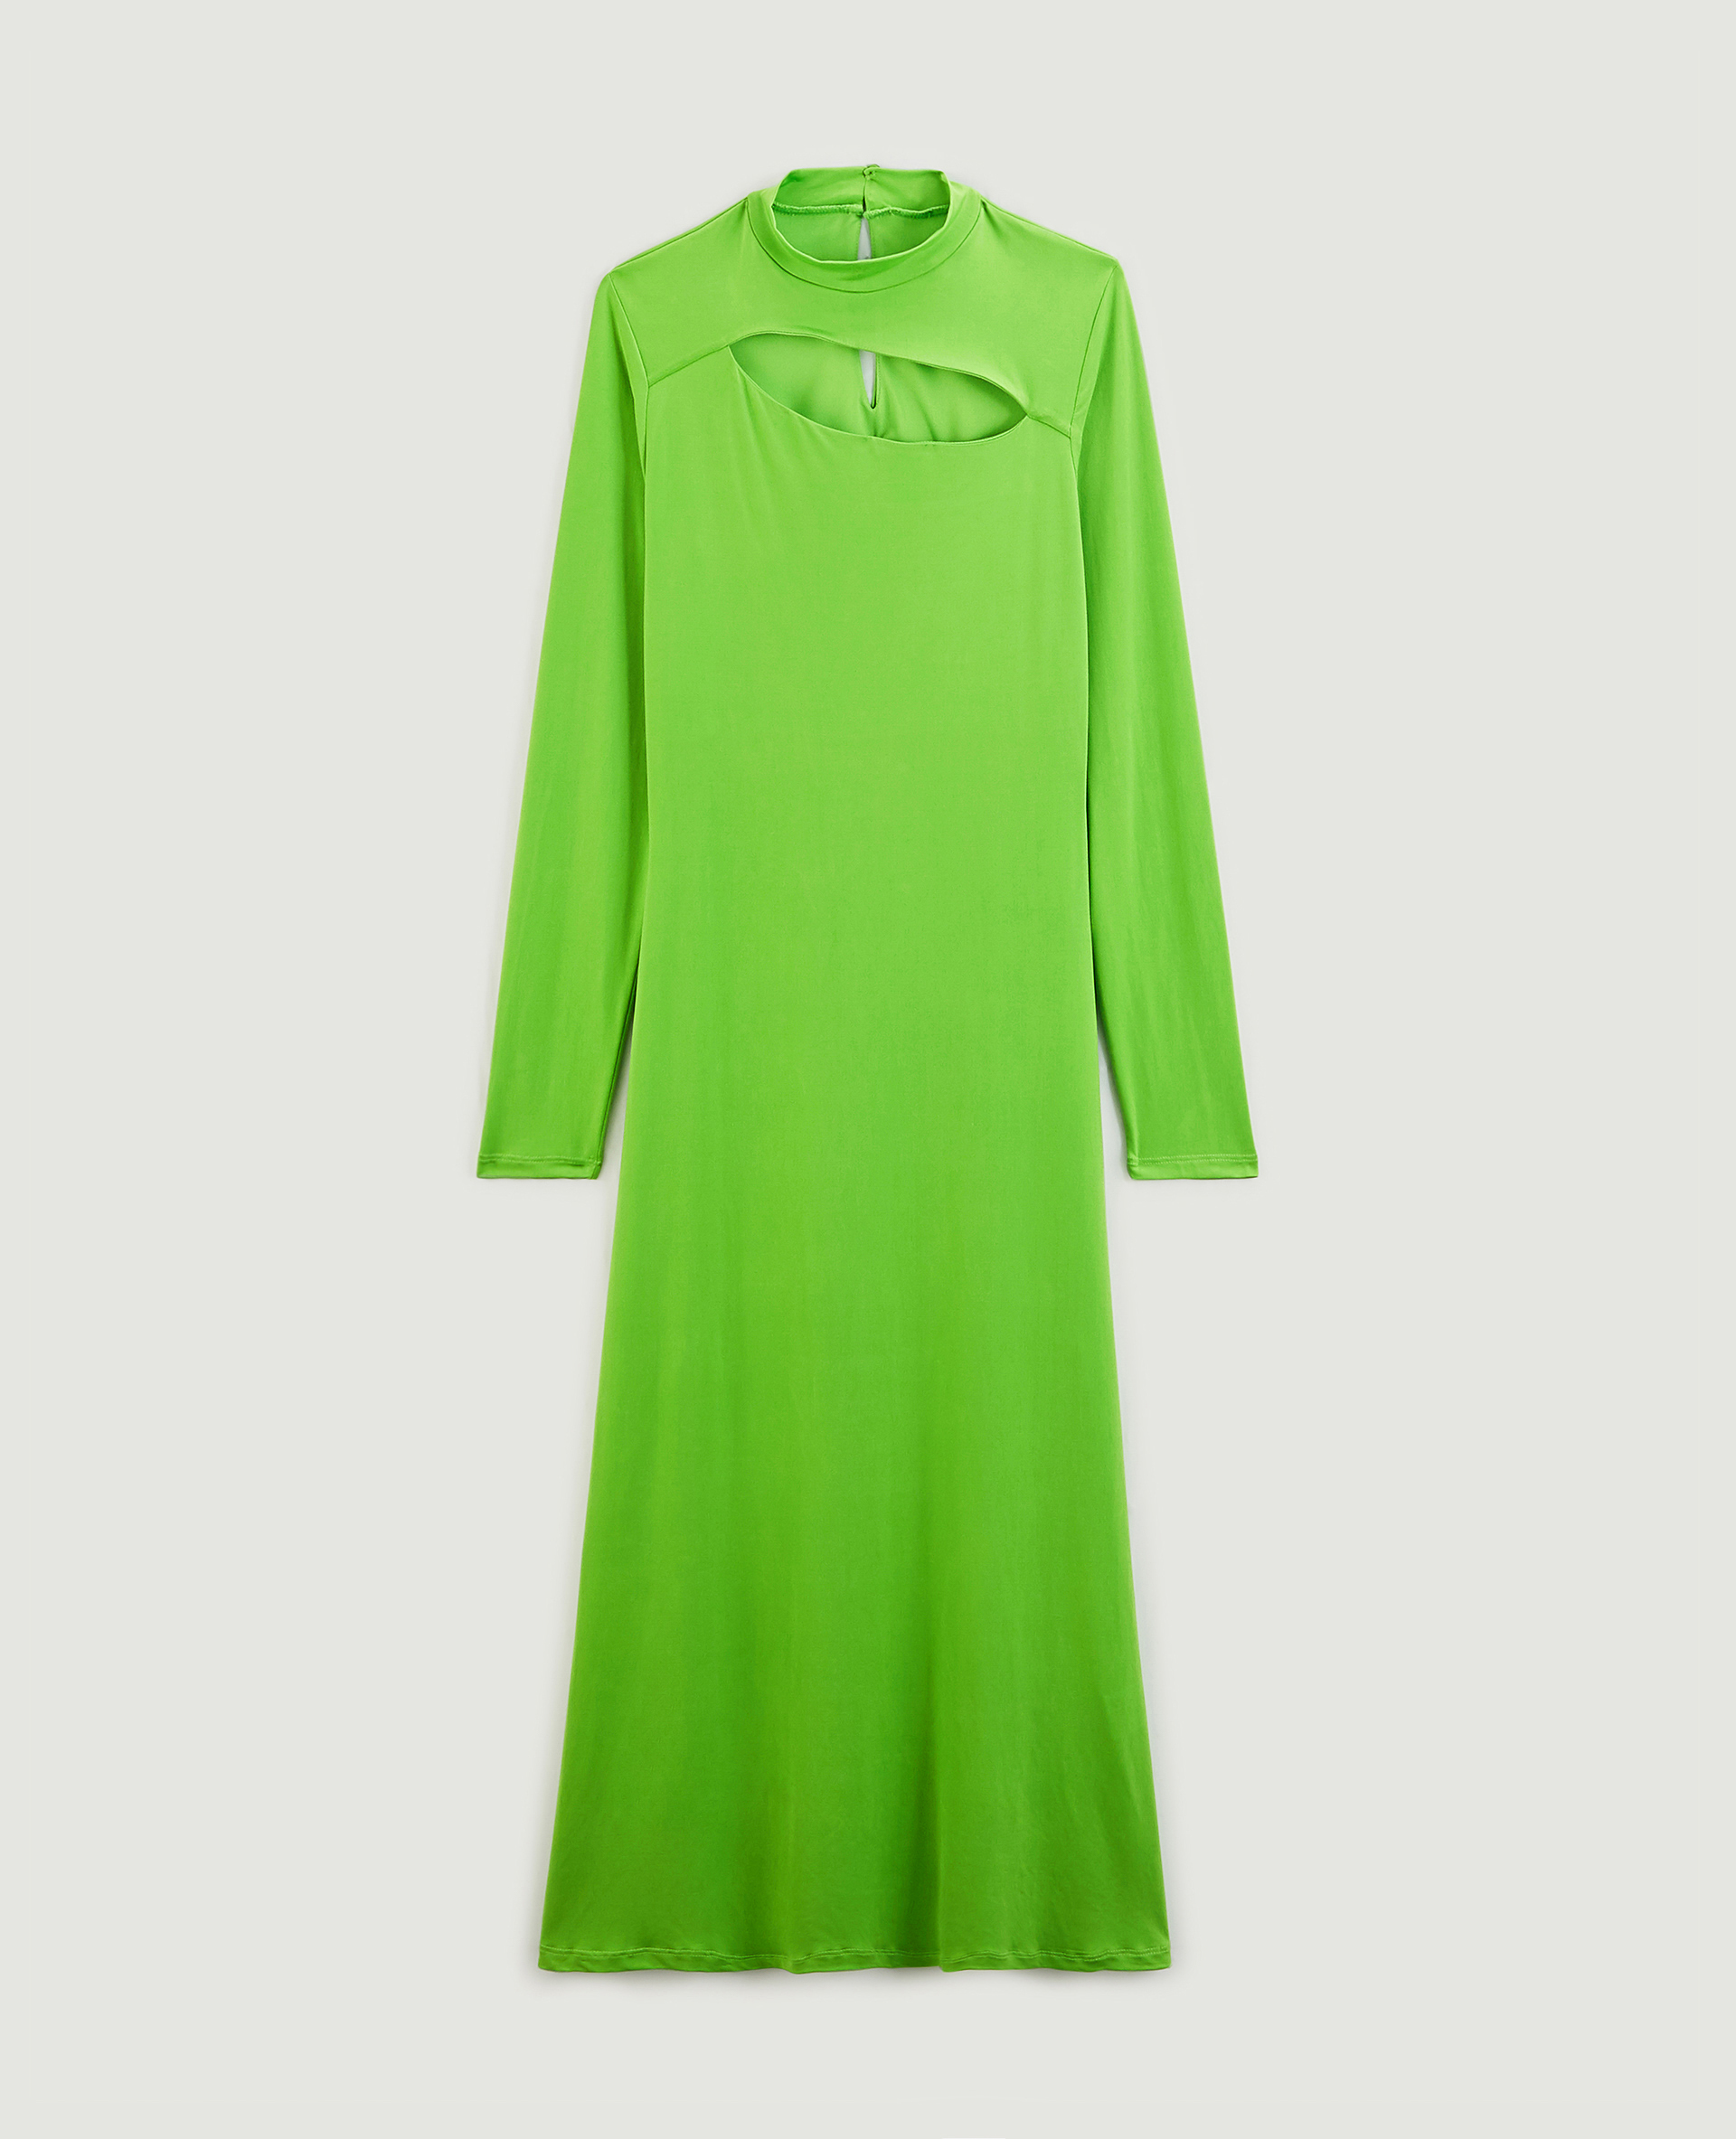 Robe longue avec ouverture devant vert olive - Pimkie